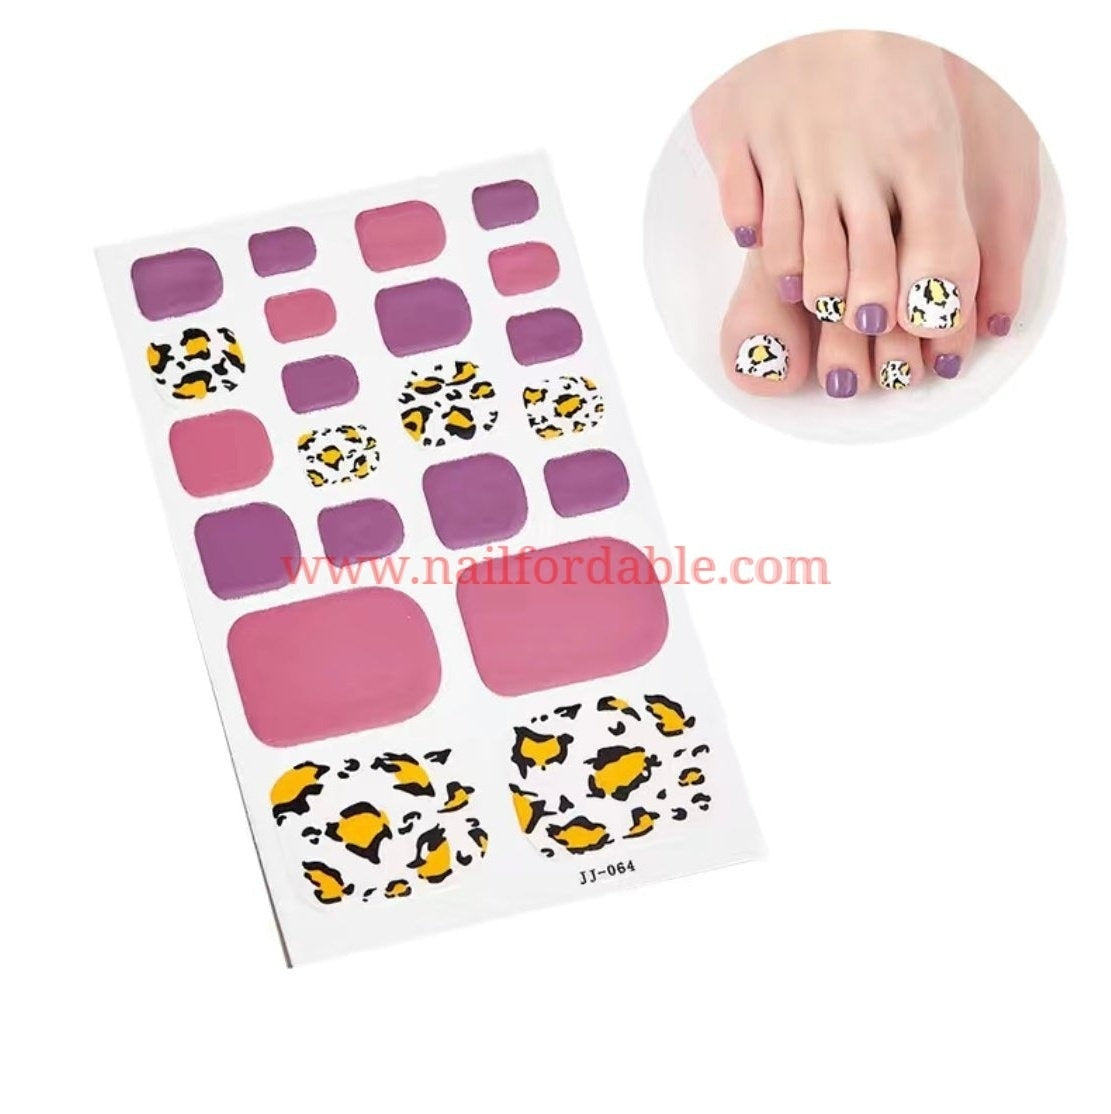 Leopard print Nail Wraps | Semi Cured Gel Wraps | Gel Nail Wraps |Nail Polish | Nail Stickers